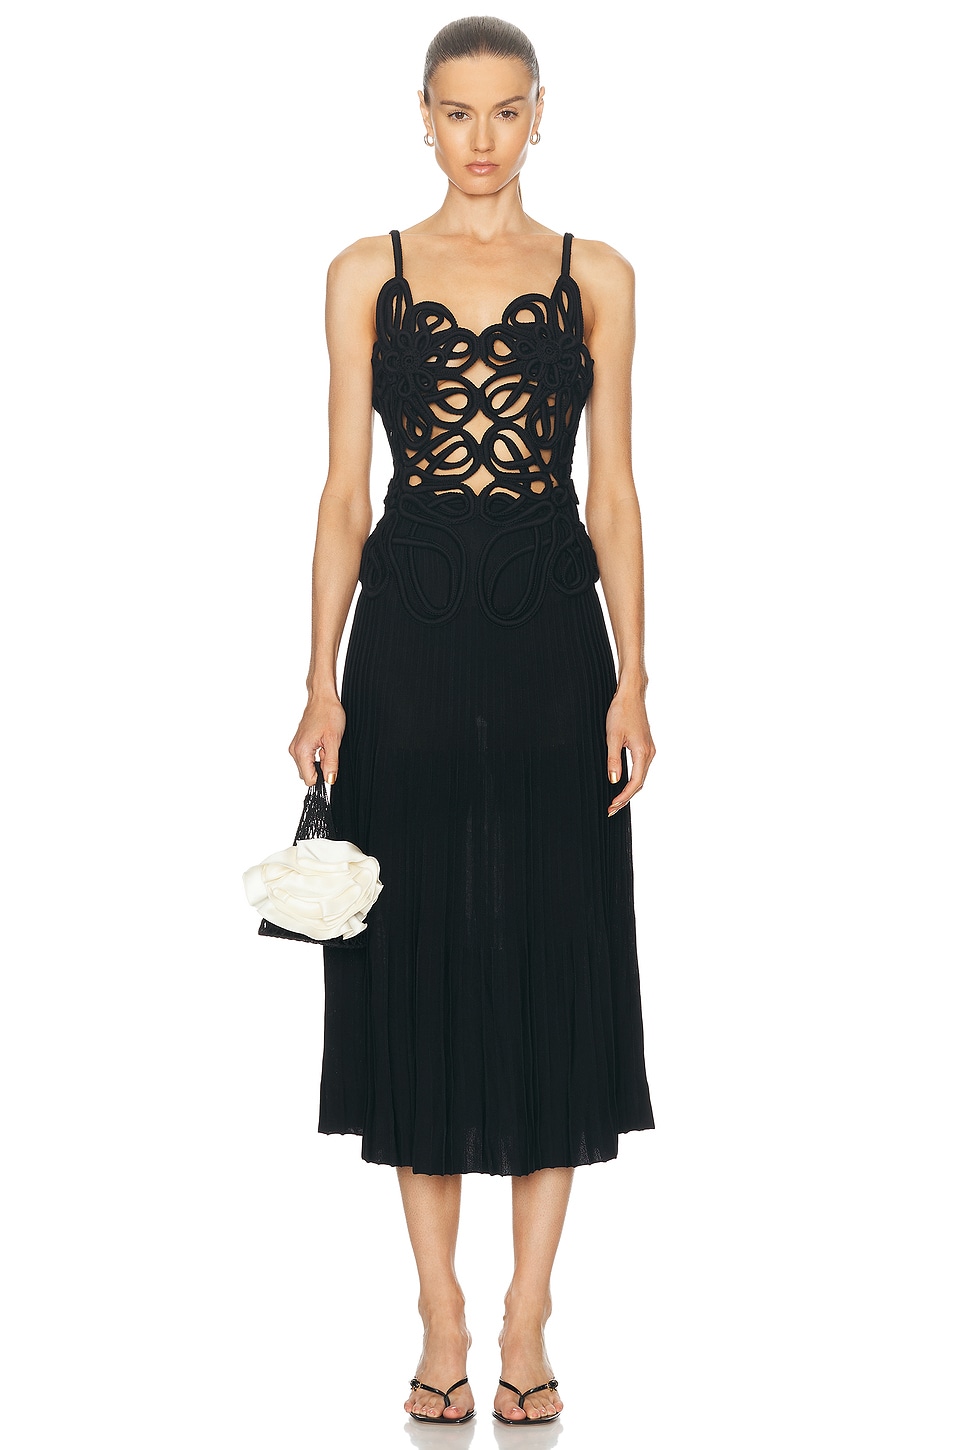 Nalda Knit Dress in Black